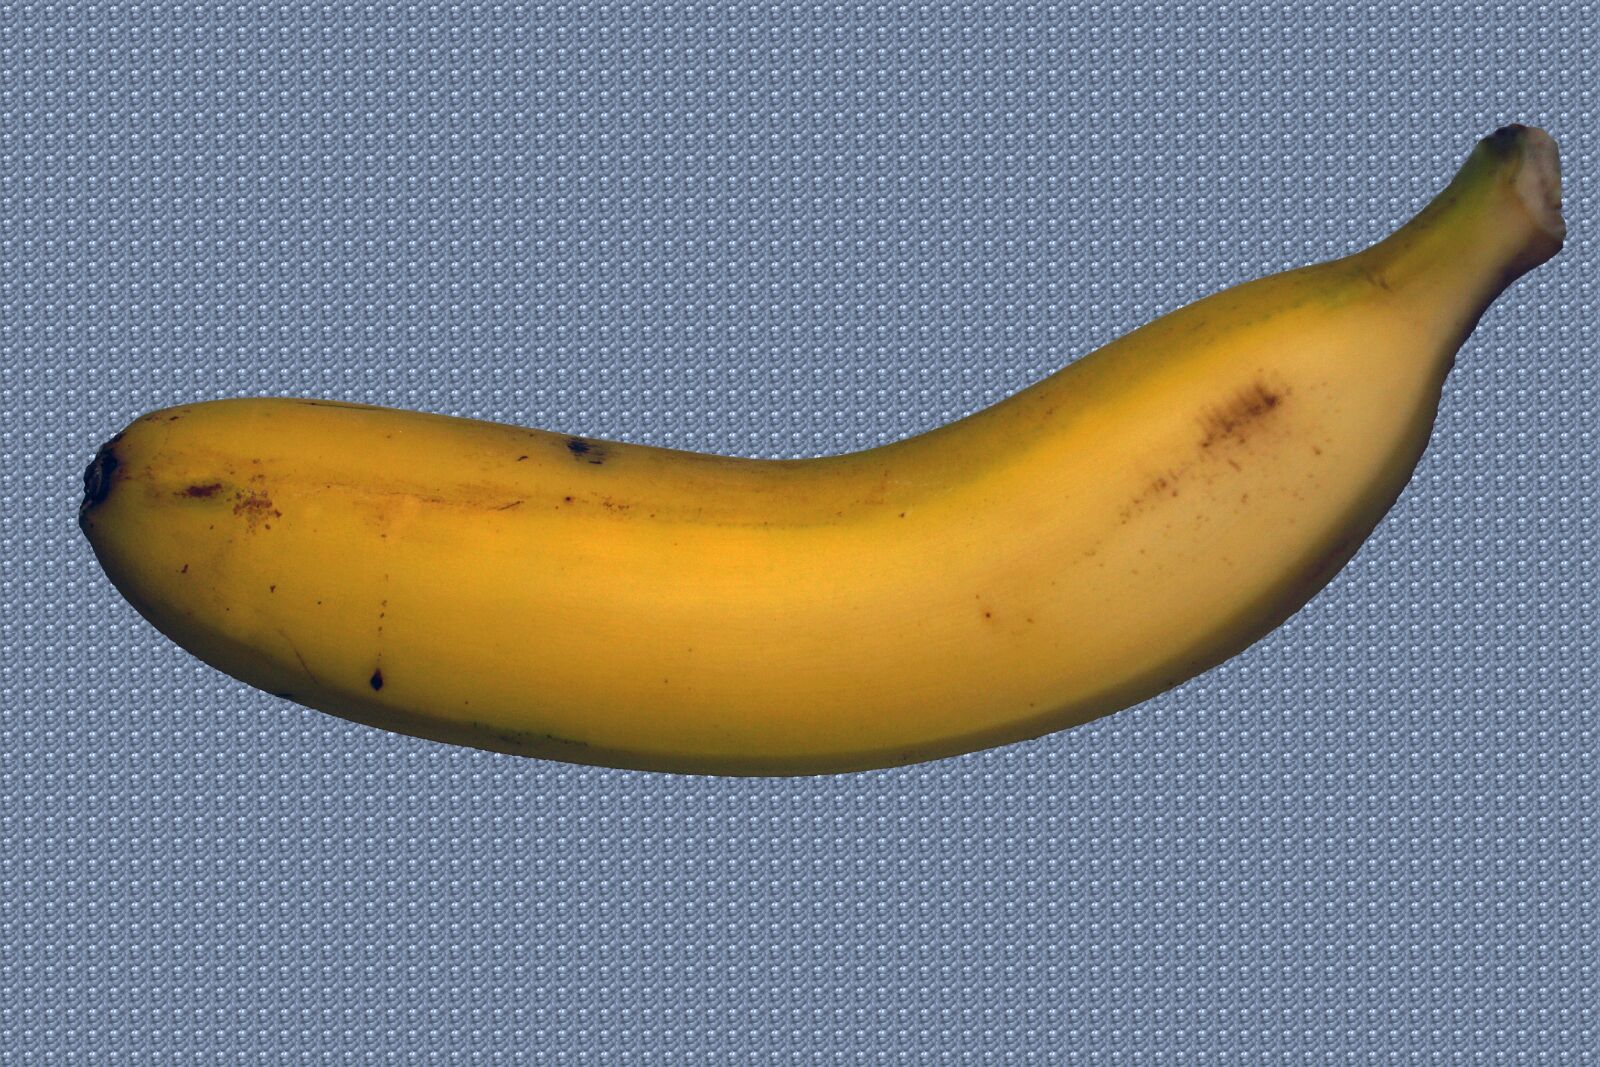 Sony SLT-A68 sample photo. Banana canary, banana, canary photography